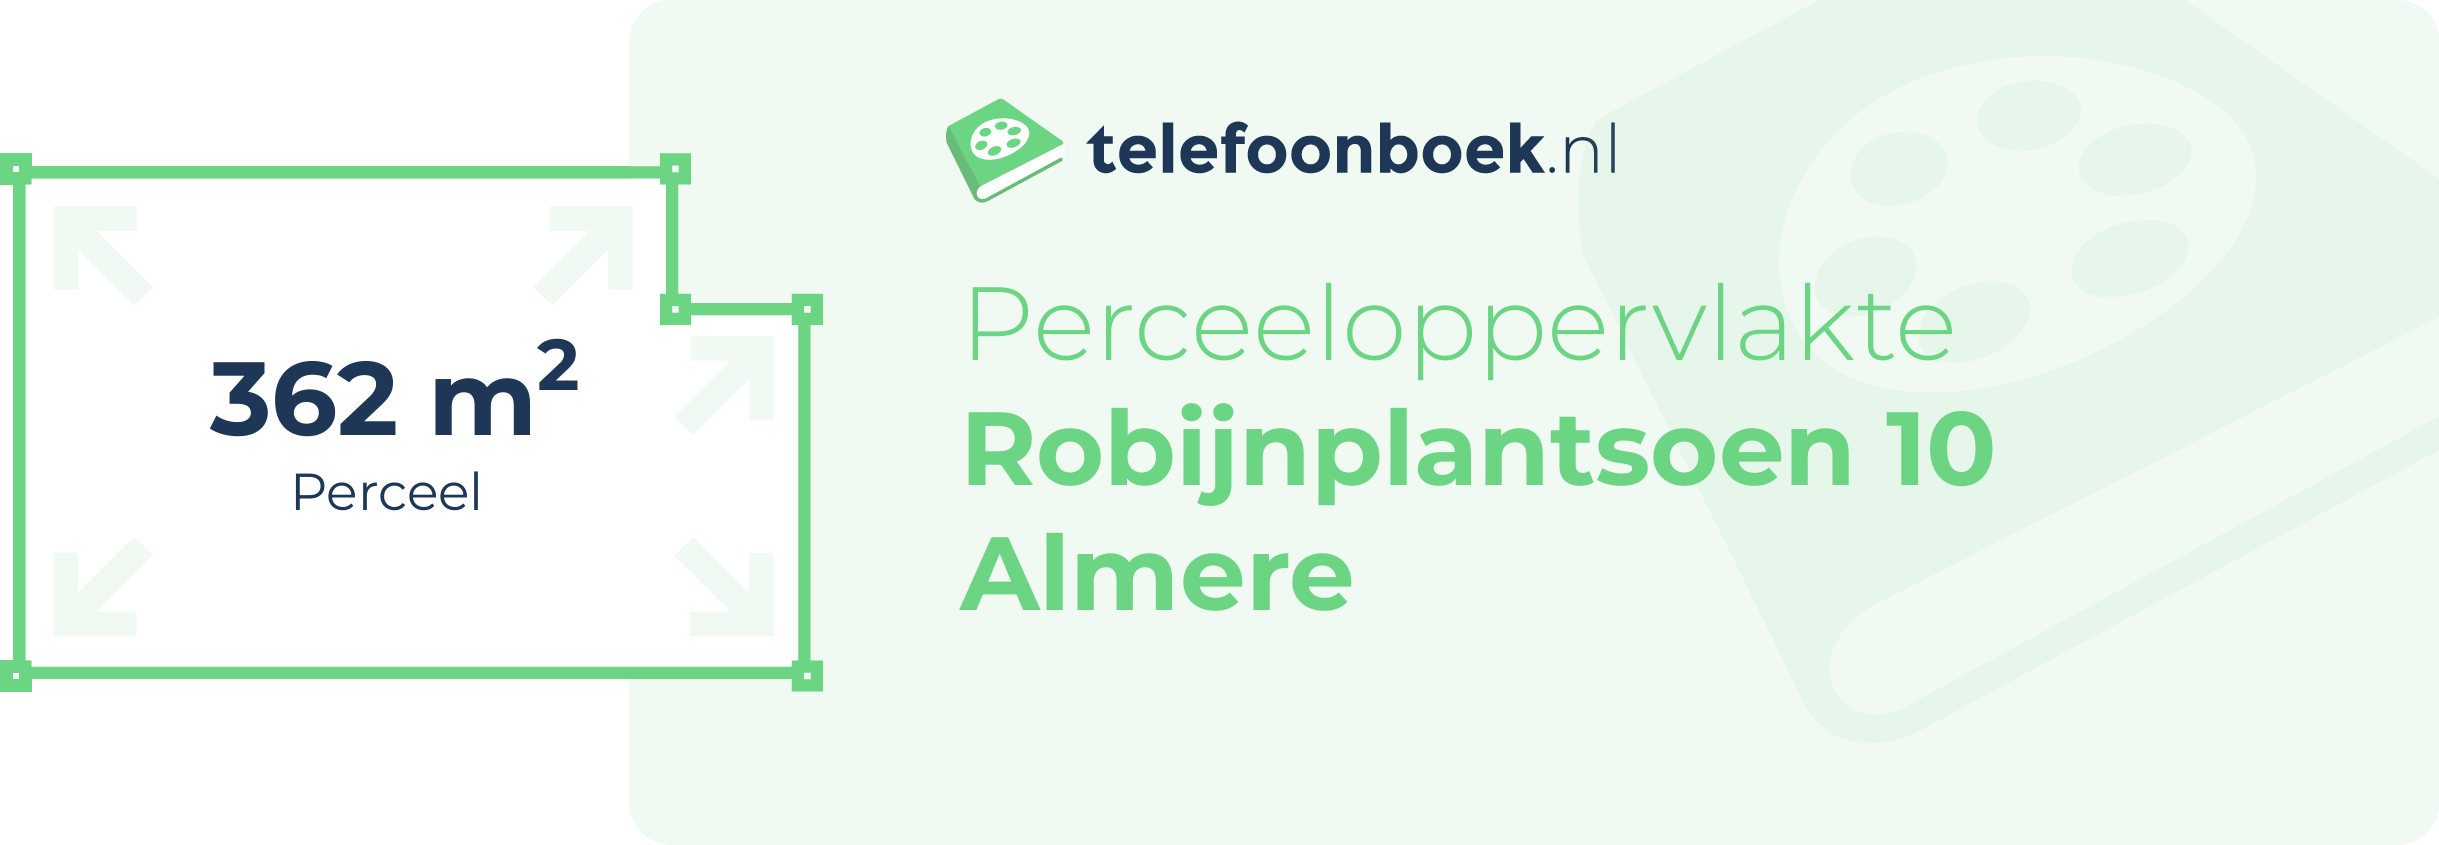 Perceeloppervlakte Robijnplantsoen 10 Almere